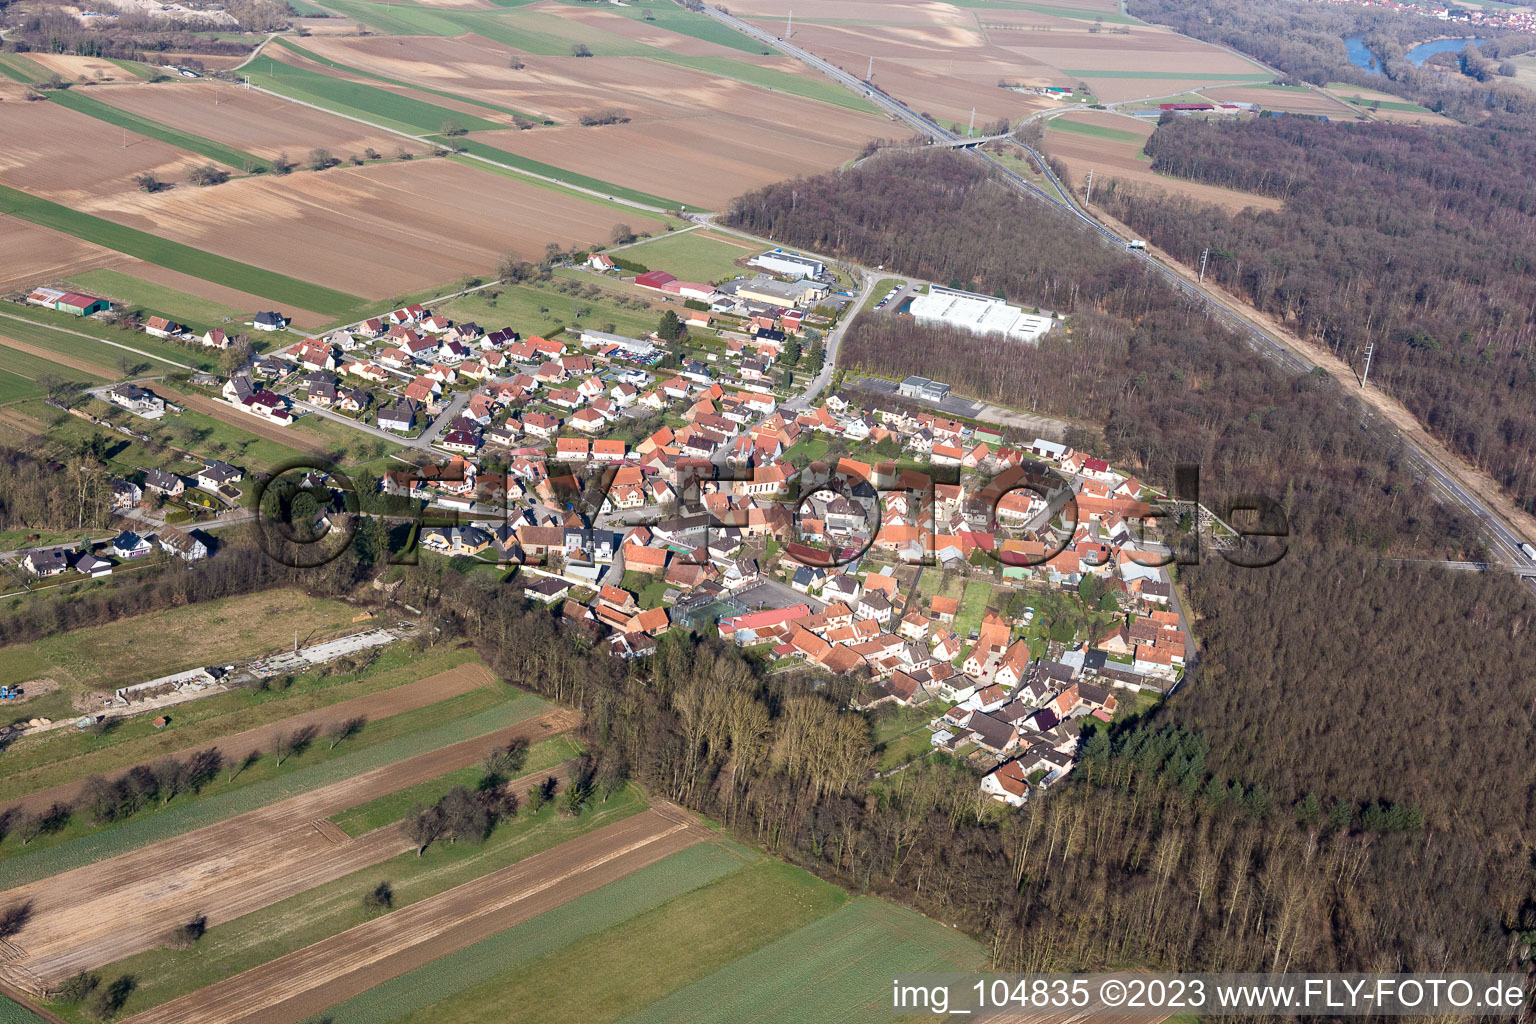 Schaffhouse-près-Seltz dans le département Bas Rhin, France vu d'un drone